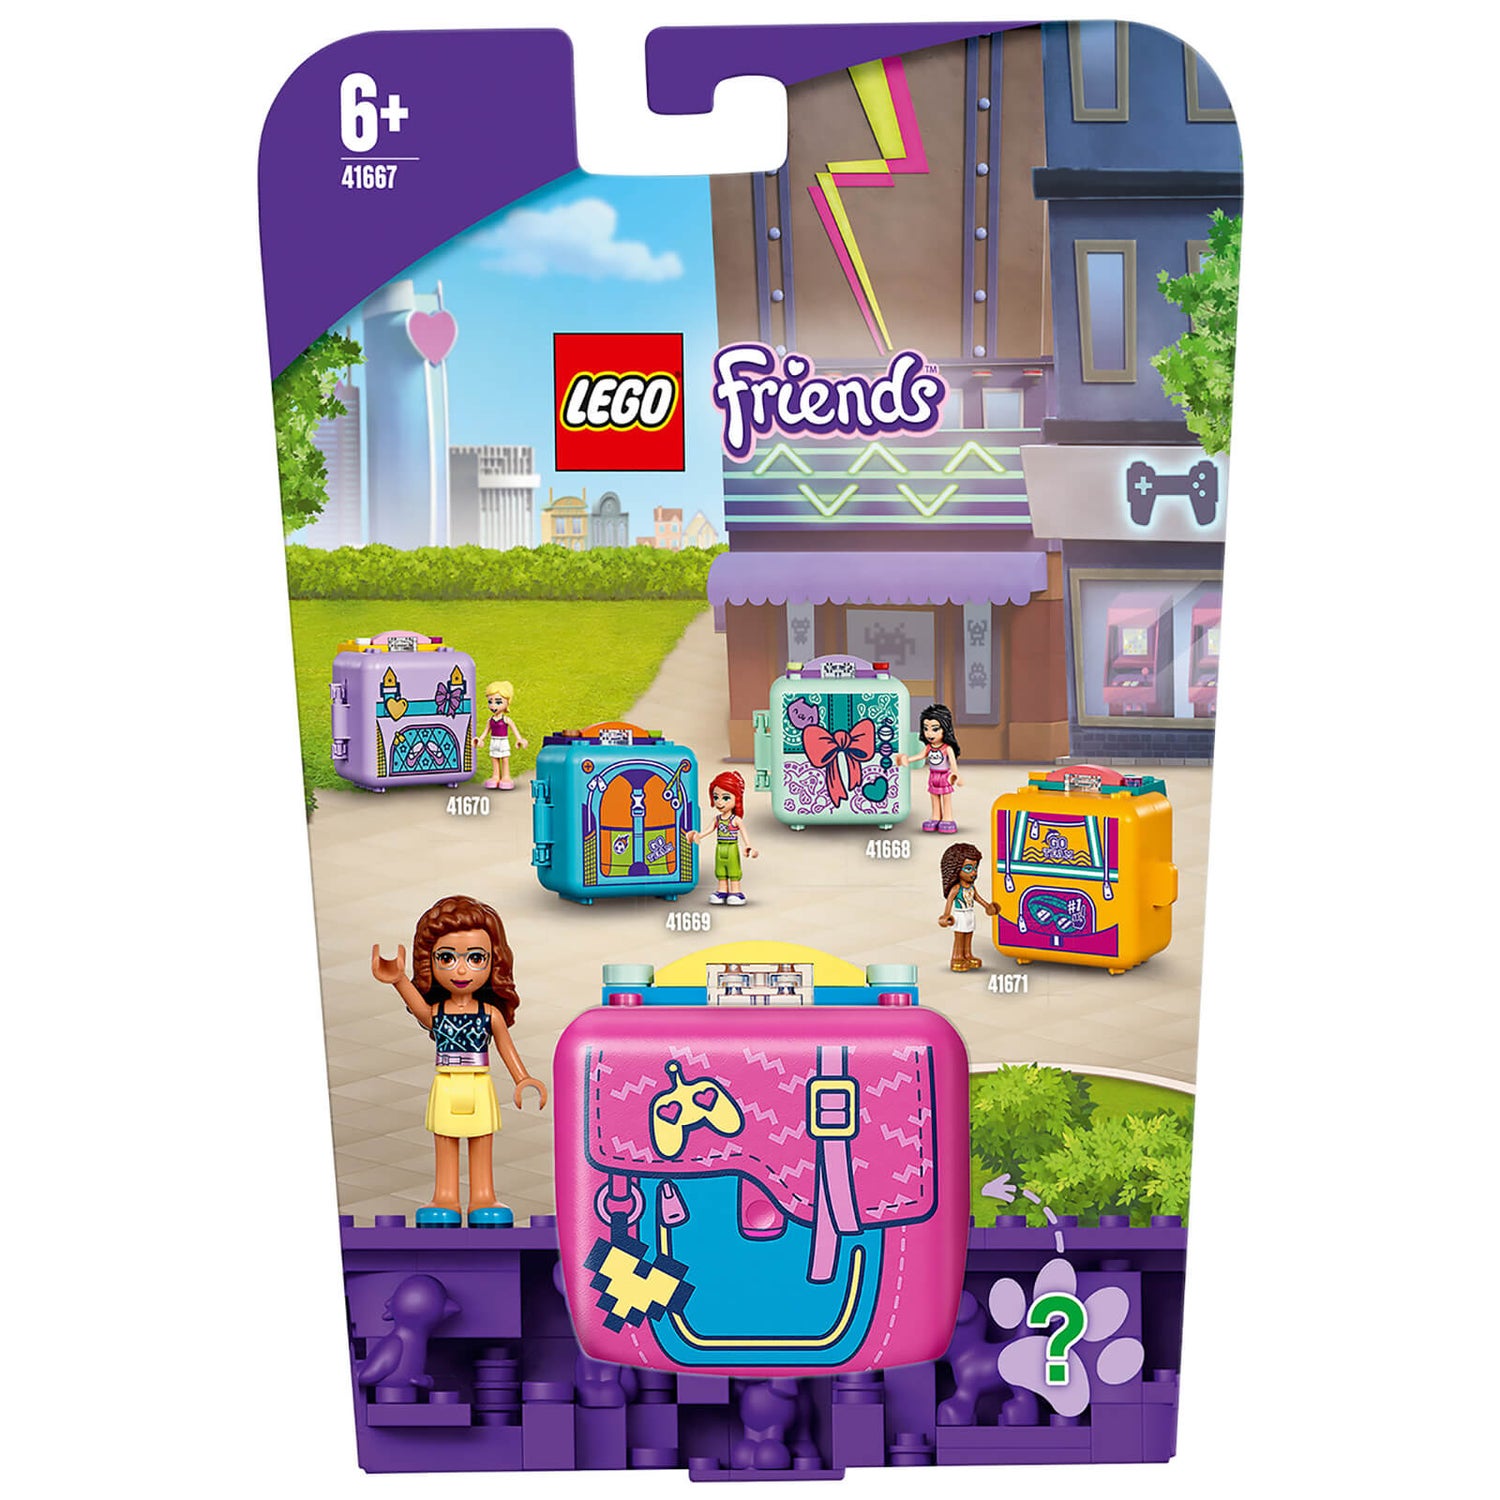 LEGO Friends: Le cube de jeu d’Olivia – jeu de voyage(41667)